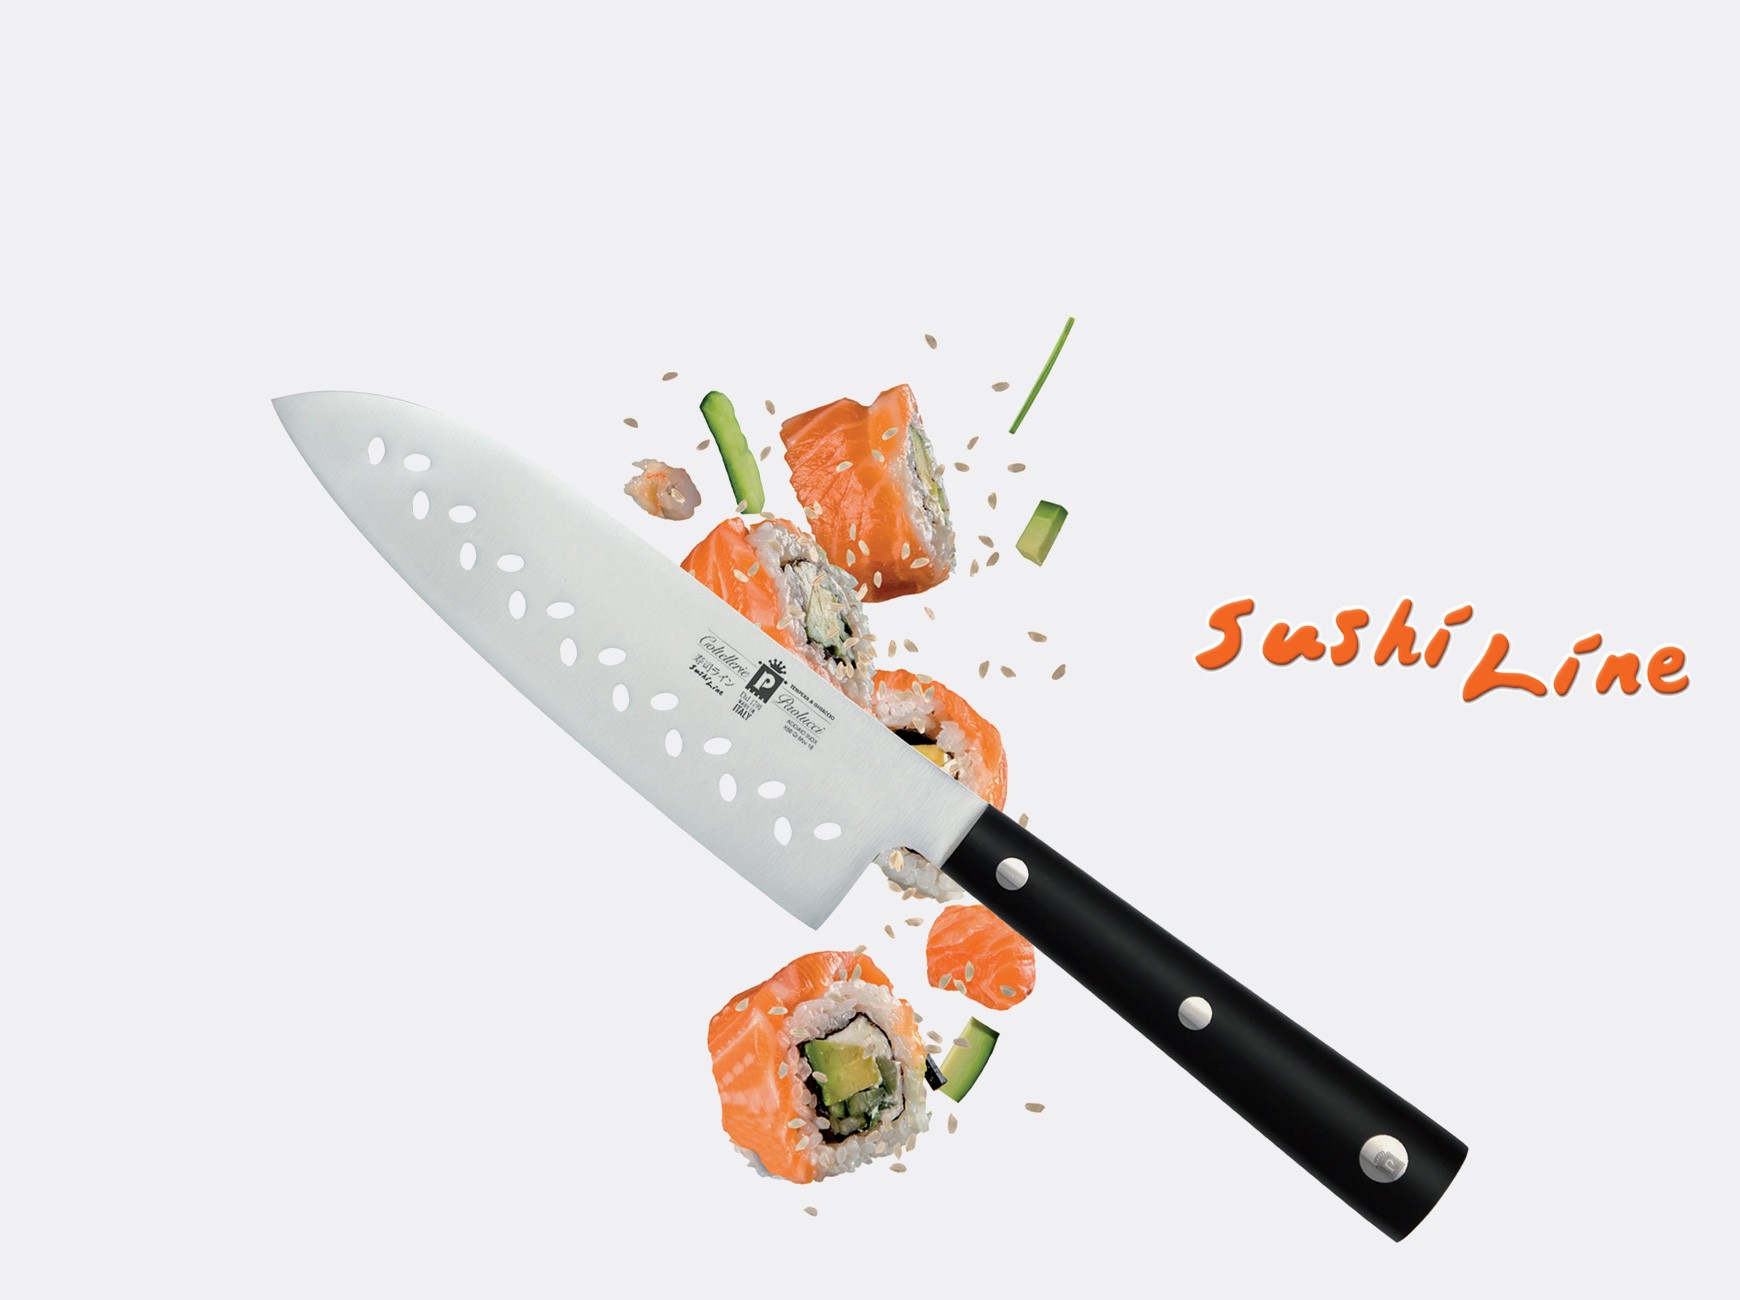 Sushi Line